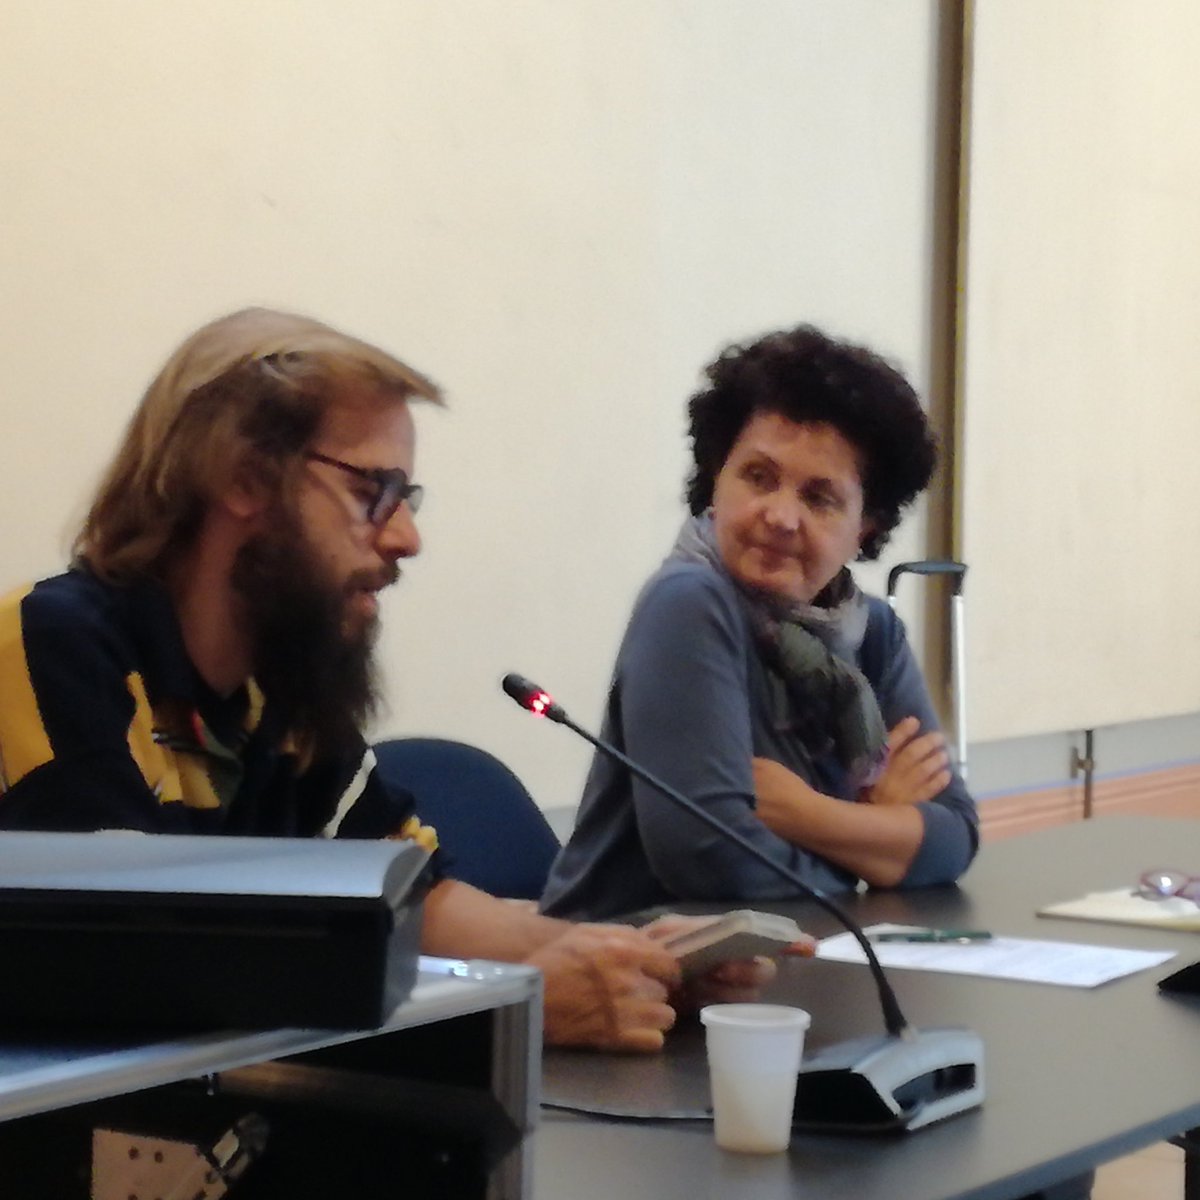 A Firenze incontro di attivisti e rappresentanti delle diaspore, italiani senza cittadinanza. Insieme #percambiarelordinedellecose @cospeonlus